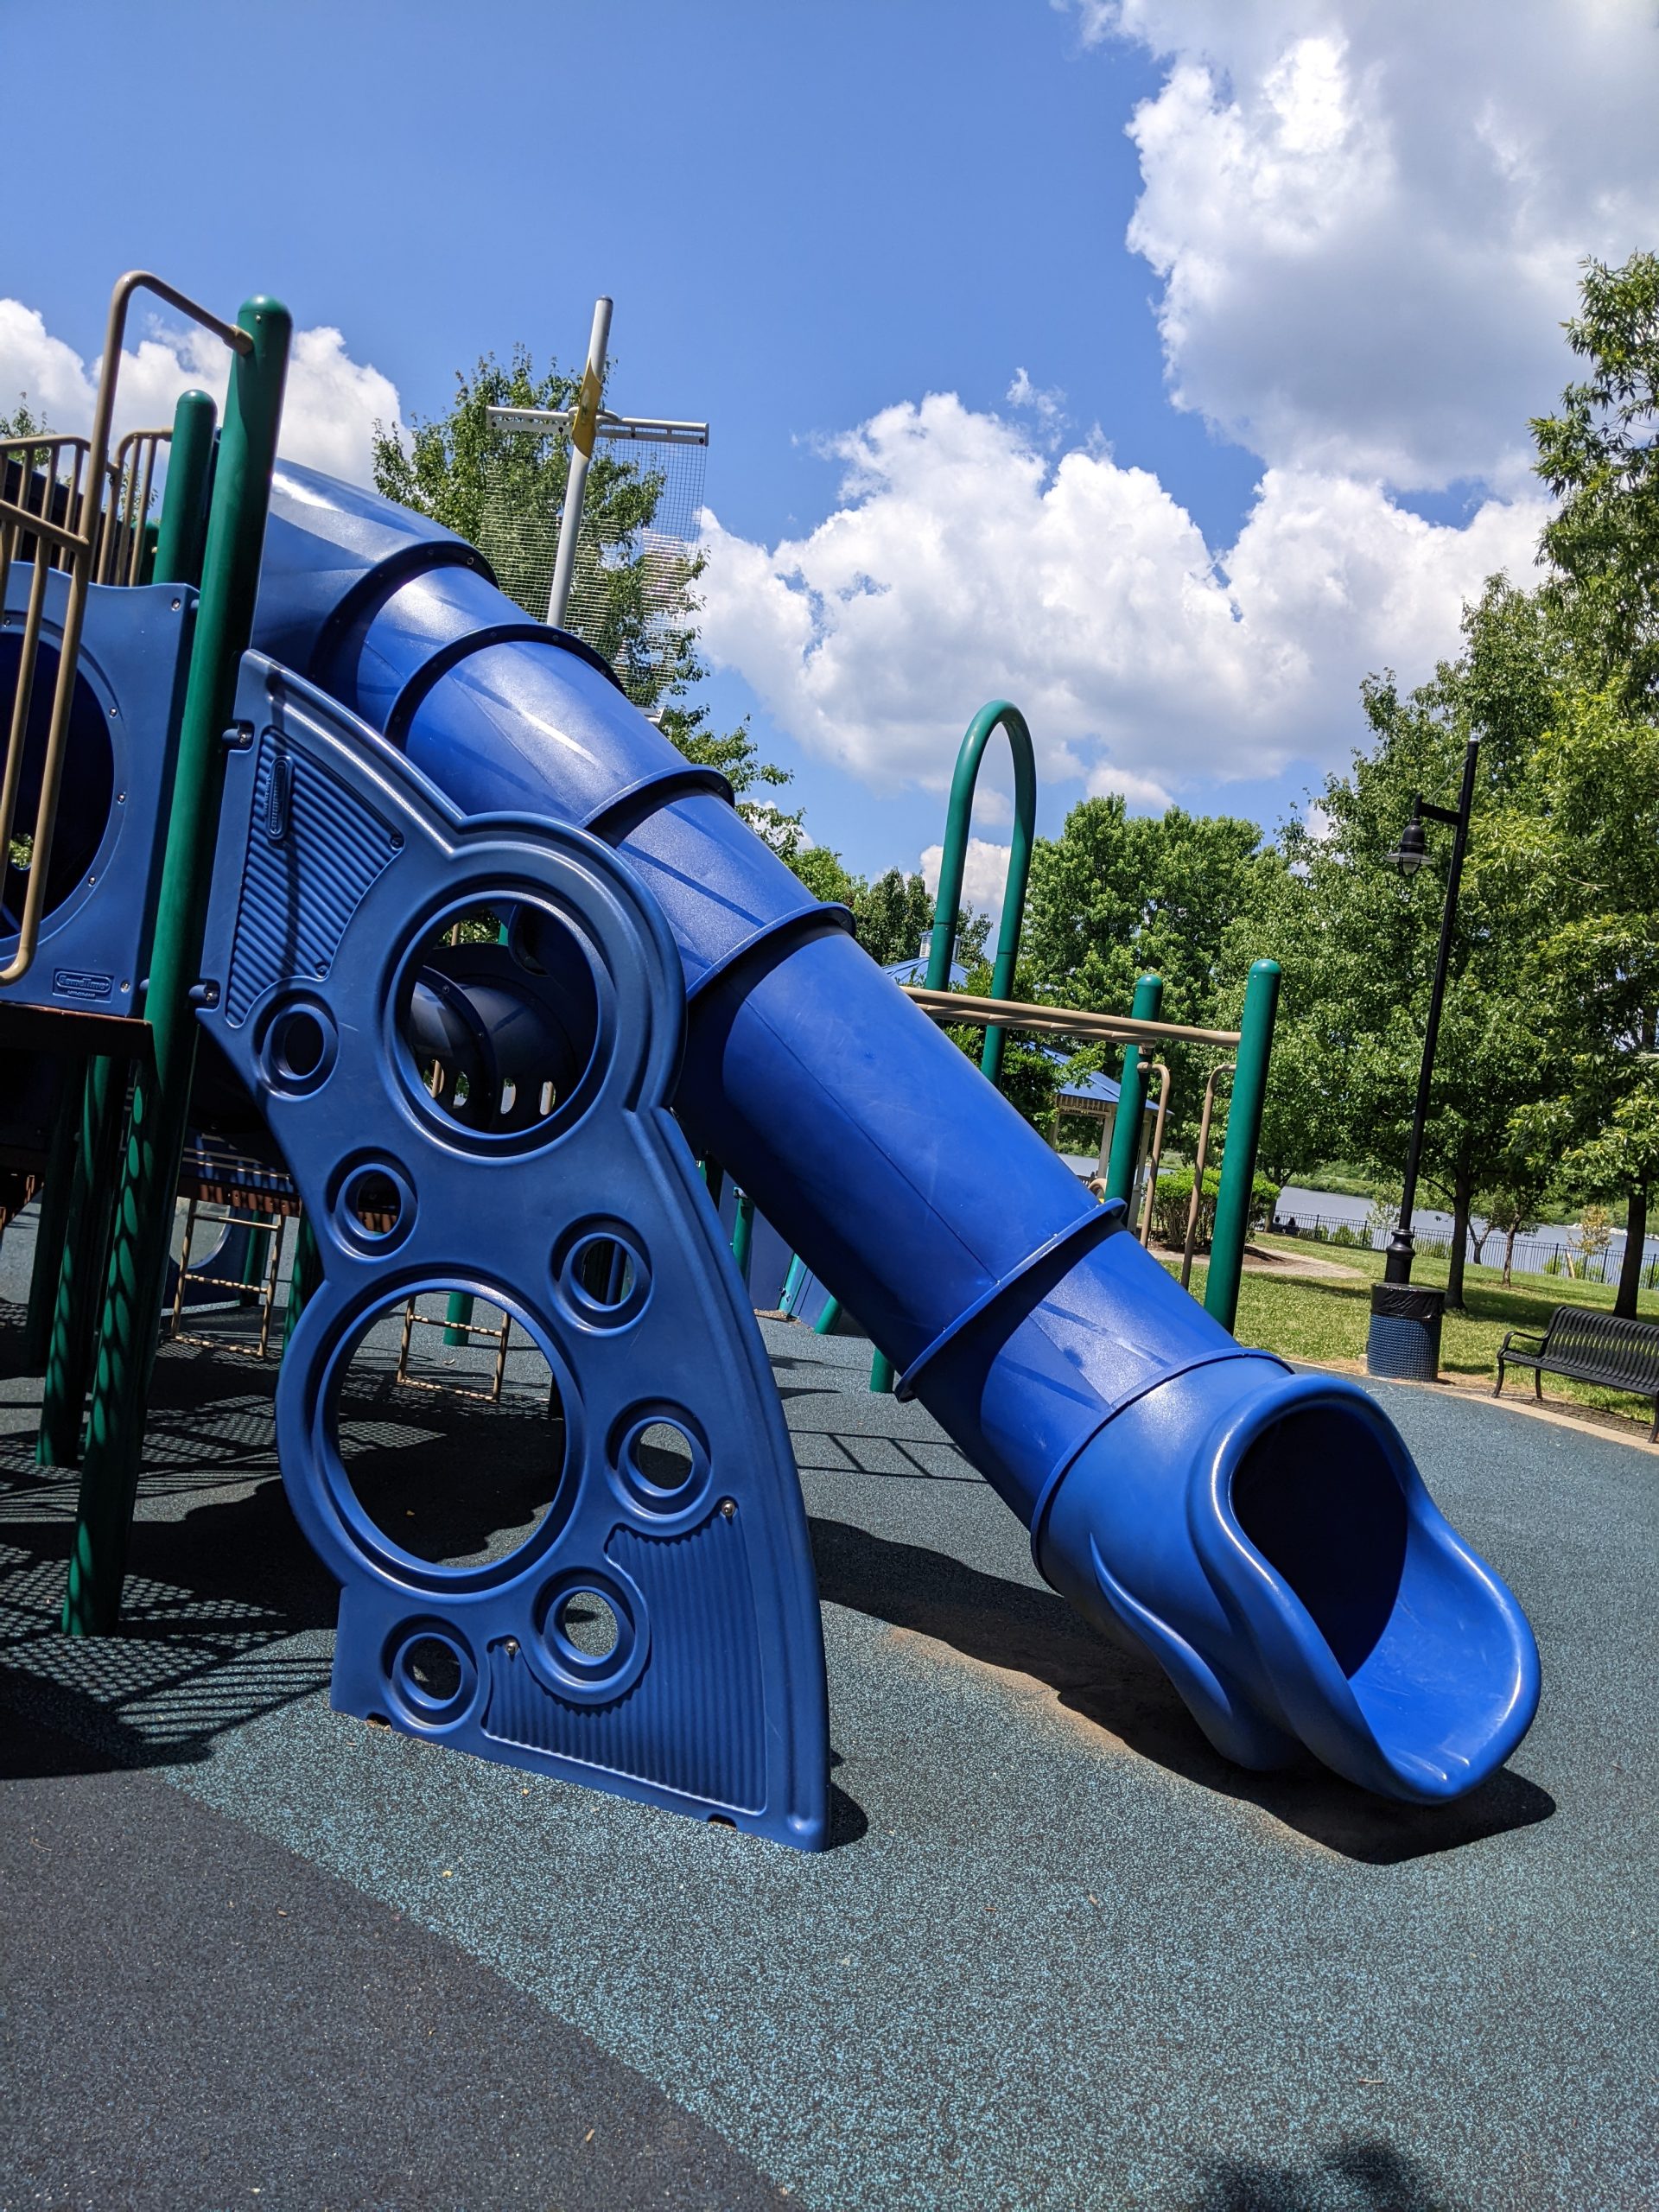 SLIDES AT Mercer County Park Playground in West Windsor Township NJ Enclosed slide